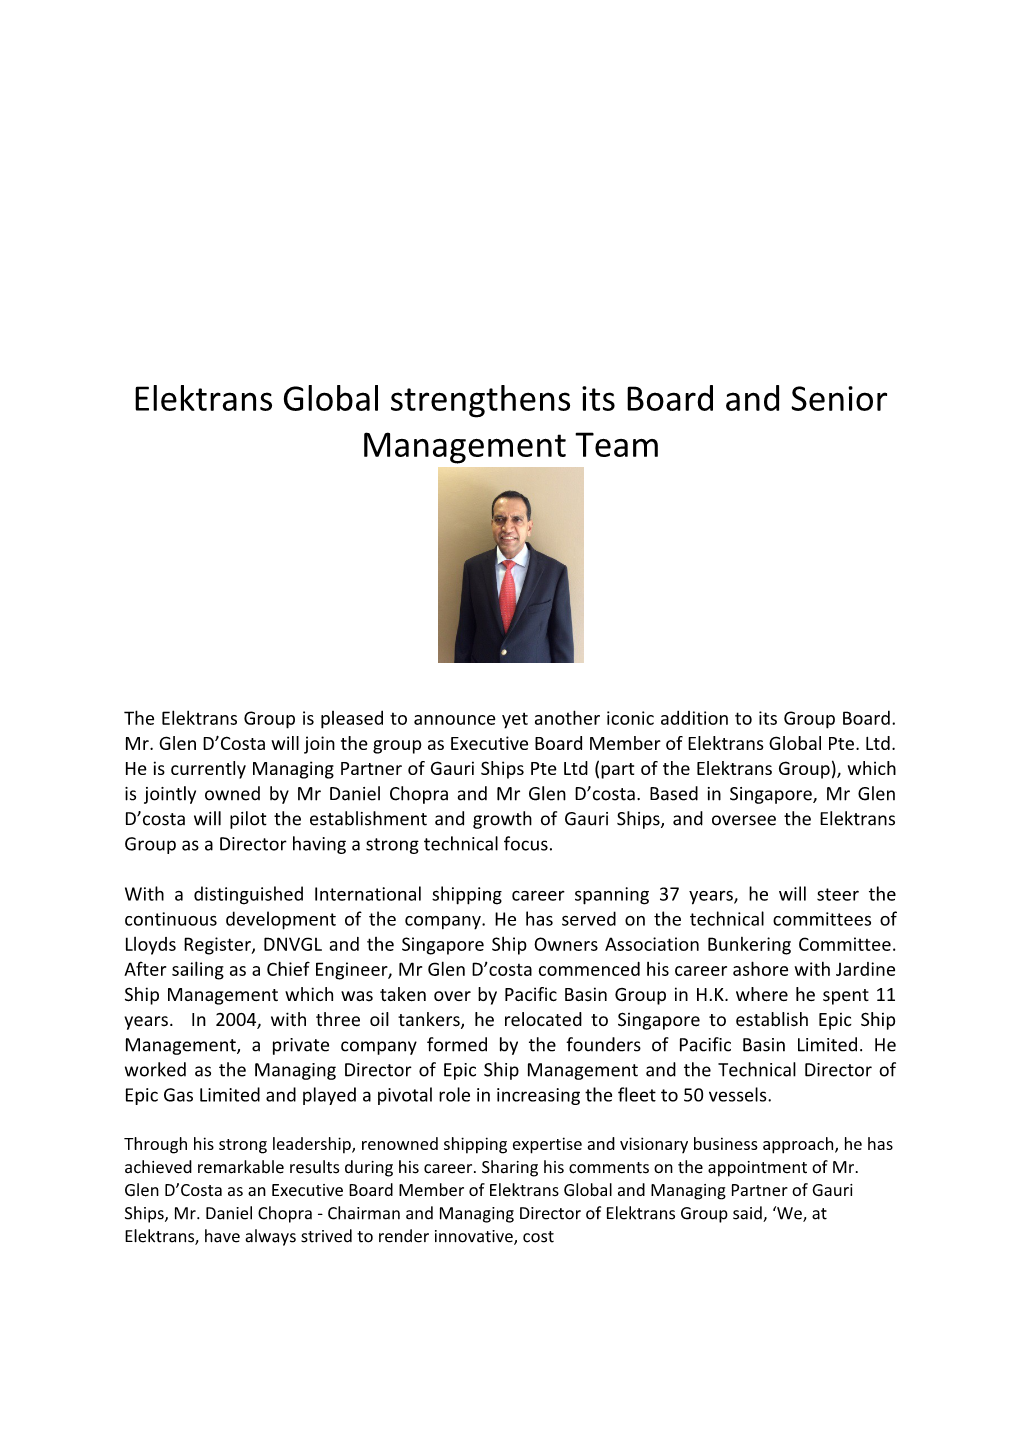 Elektrans Global Strengthens Its Board and Senior Management Team